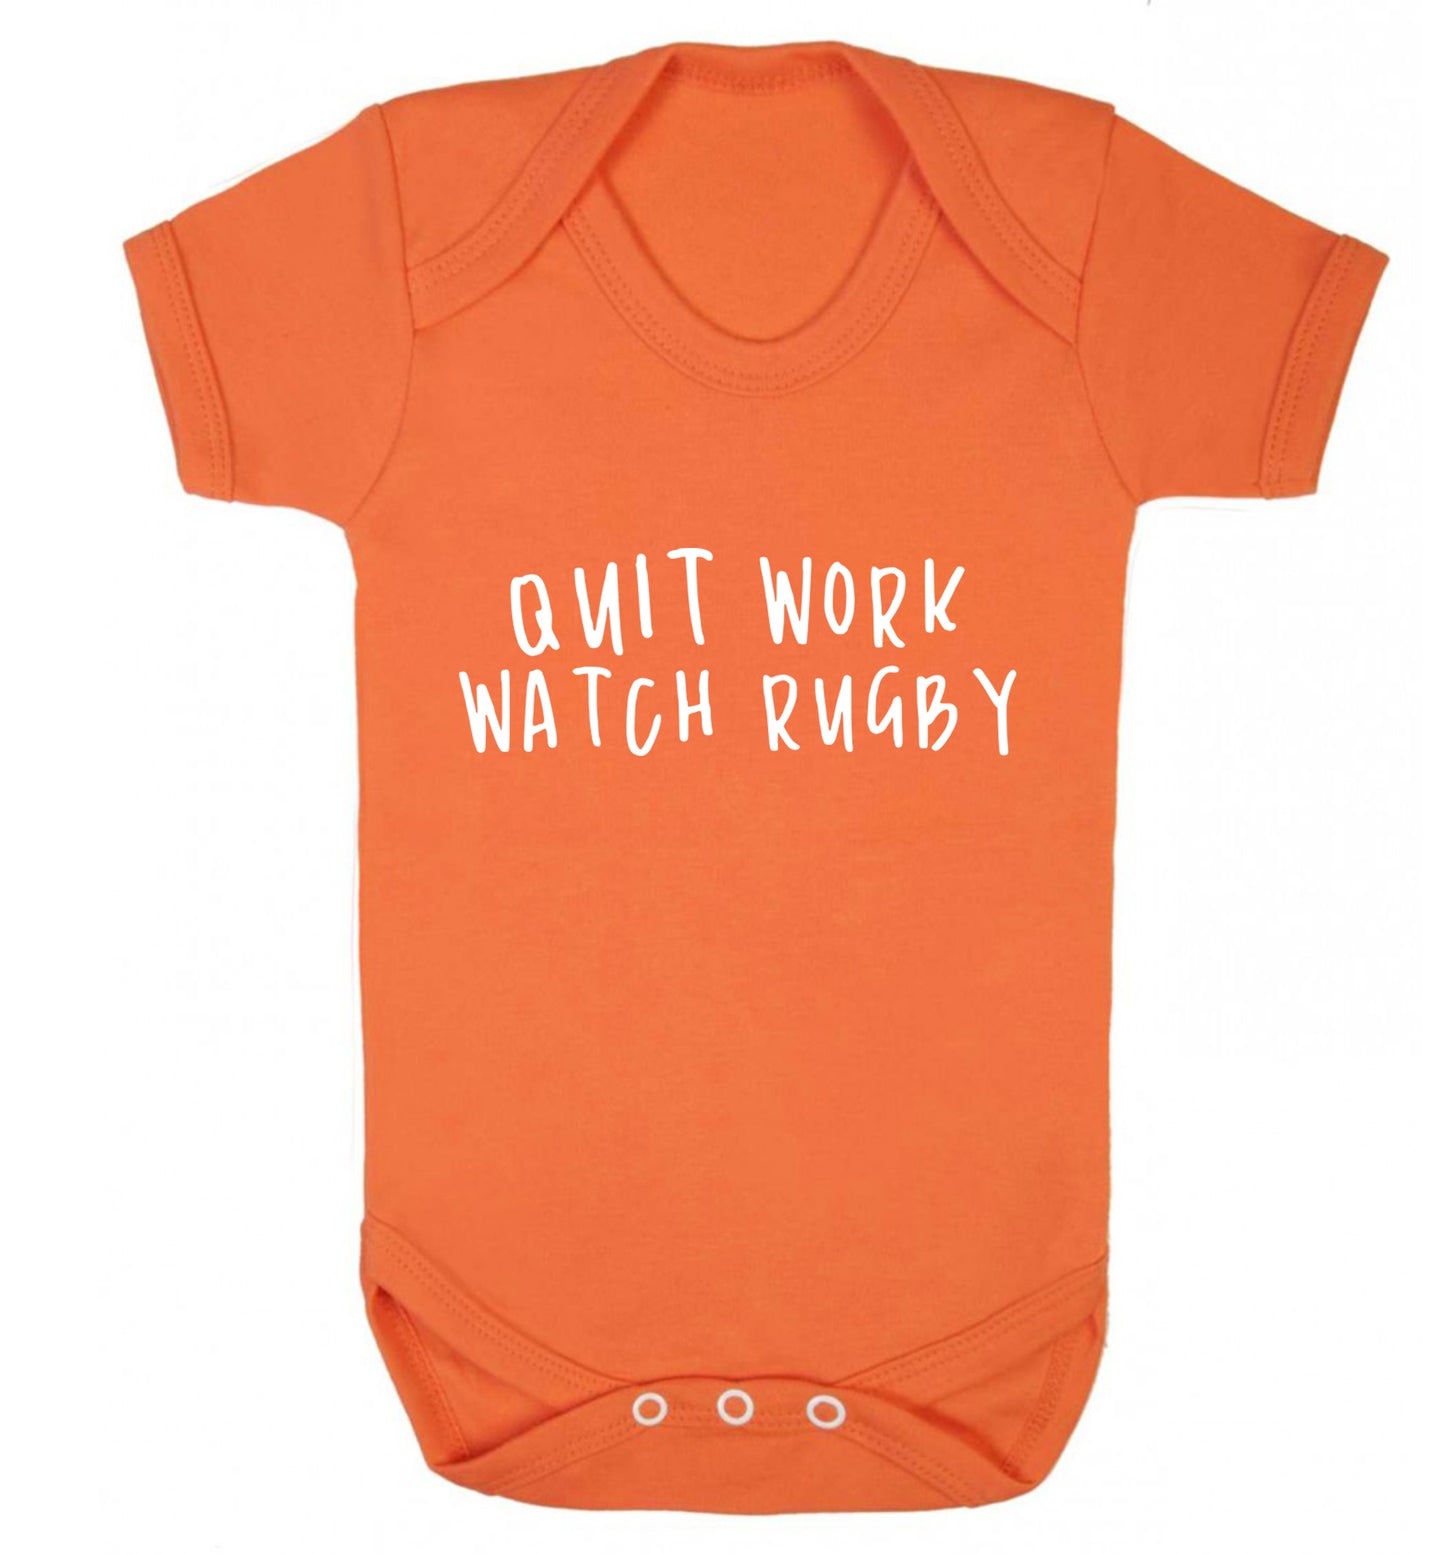 Quit work watch rugby Baby Vest orange 18-24 months